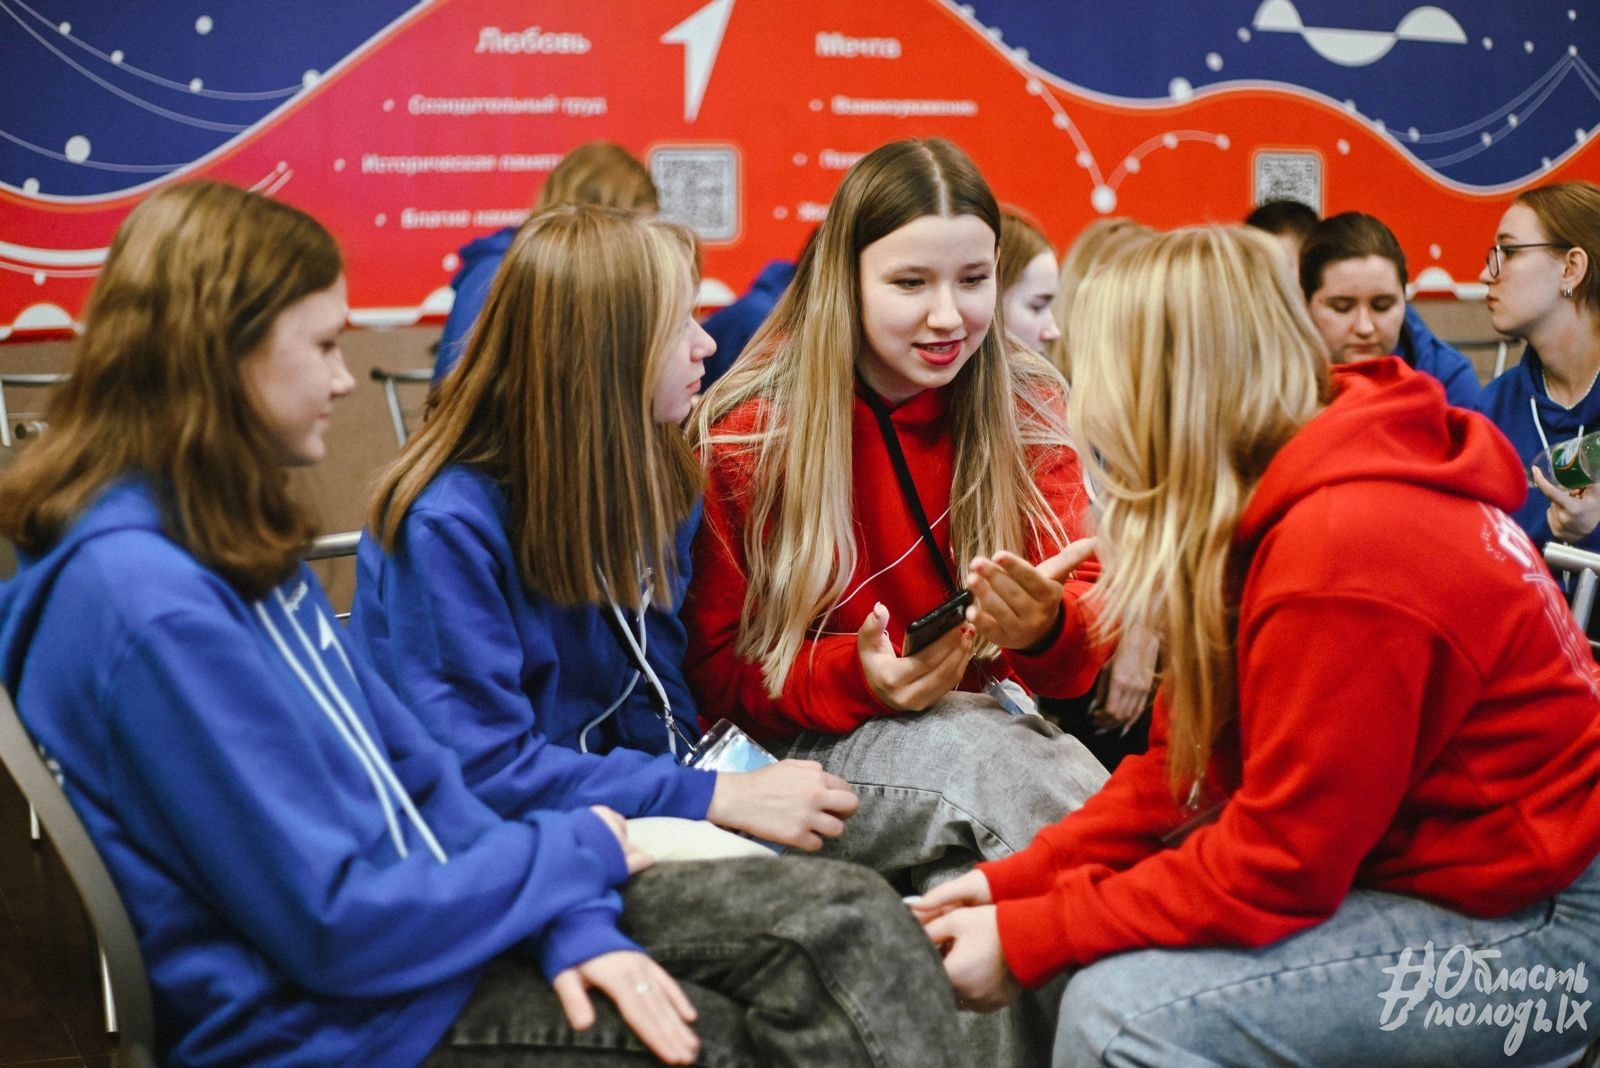 Молодёжь Приангарья представит свои проекты в Москве на Международной выставке-форуме "Россия"